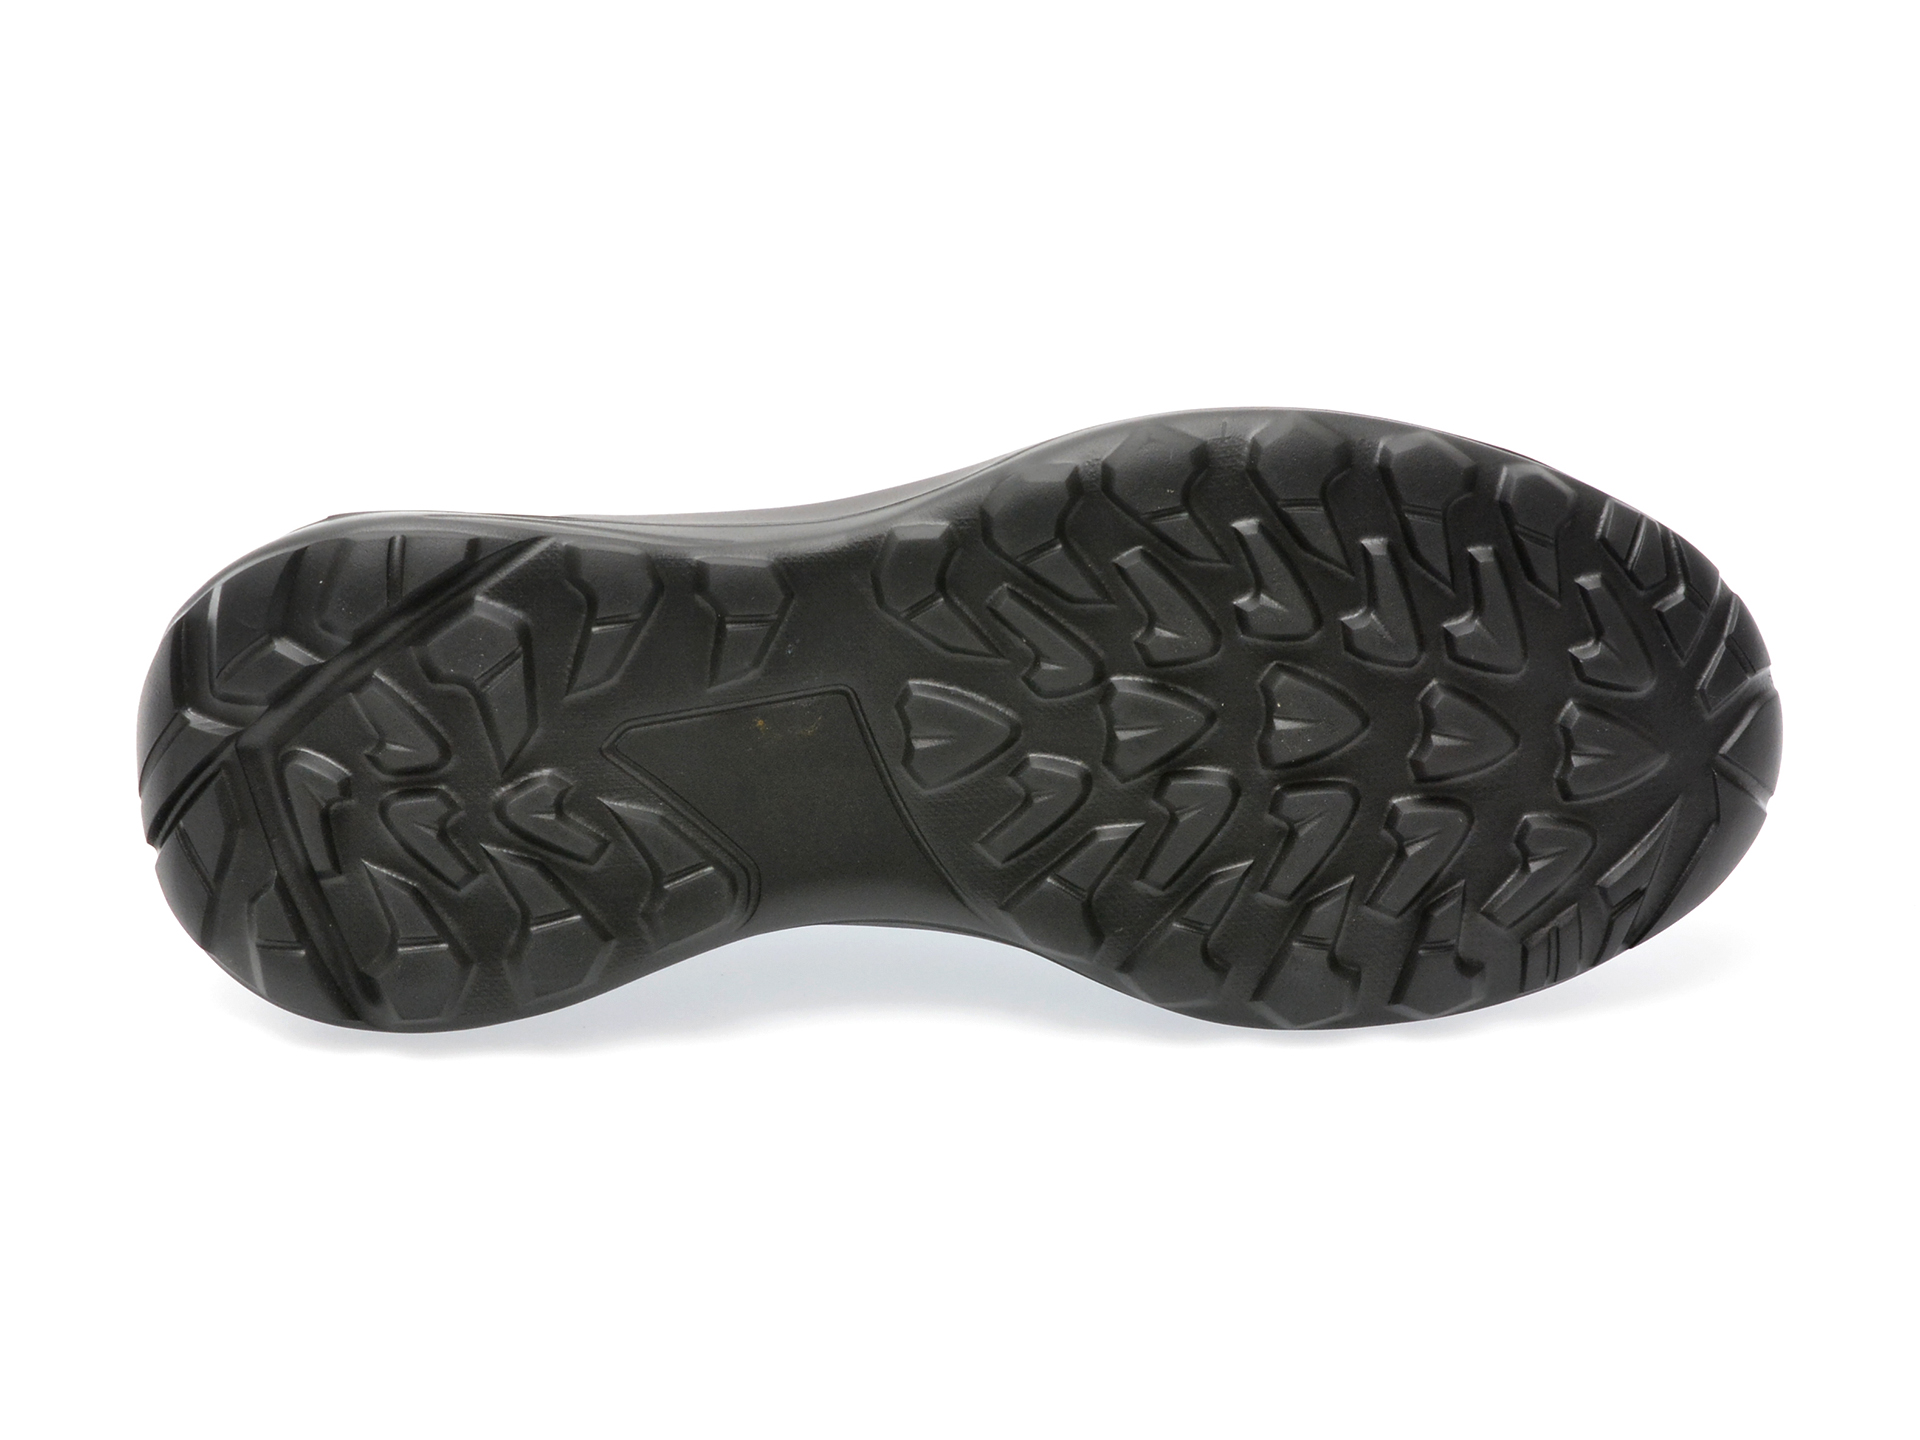 Poze Pantofi GRYXX negri, 51351, din piele naturala otter.ro